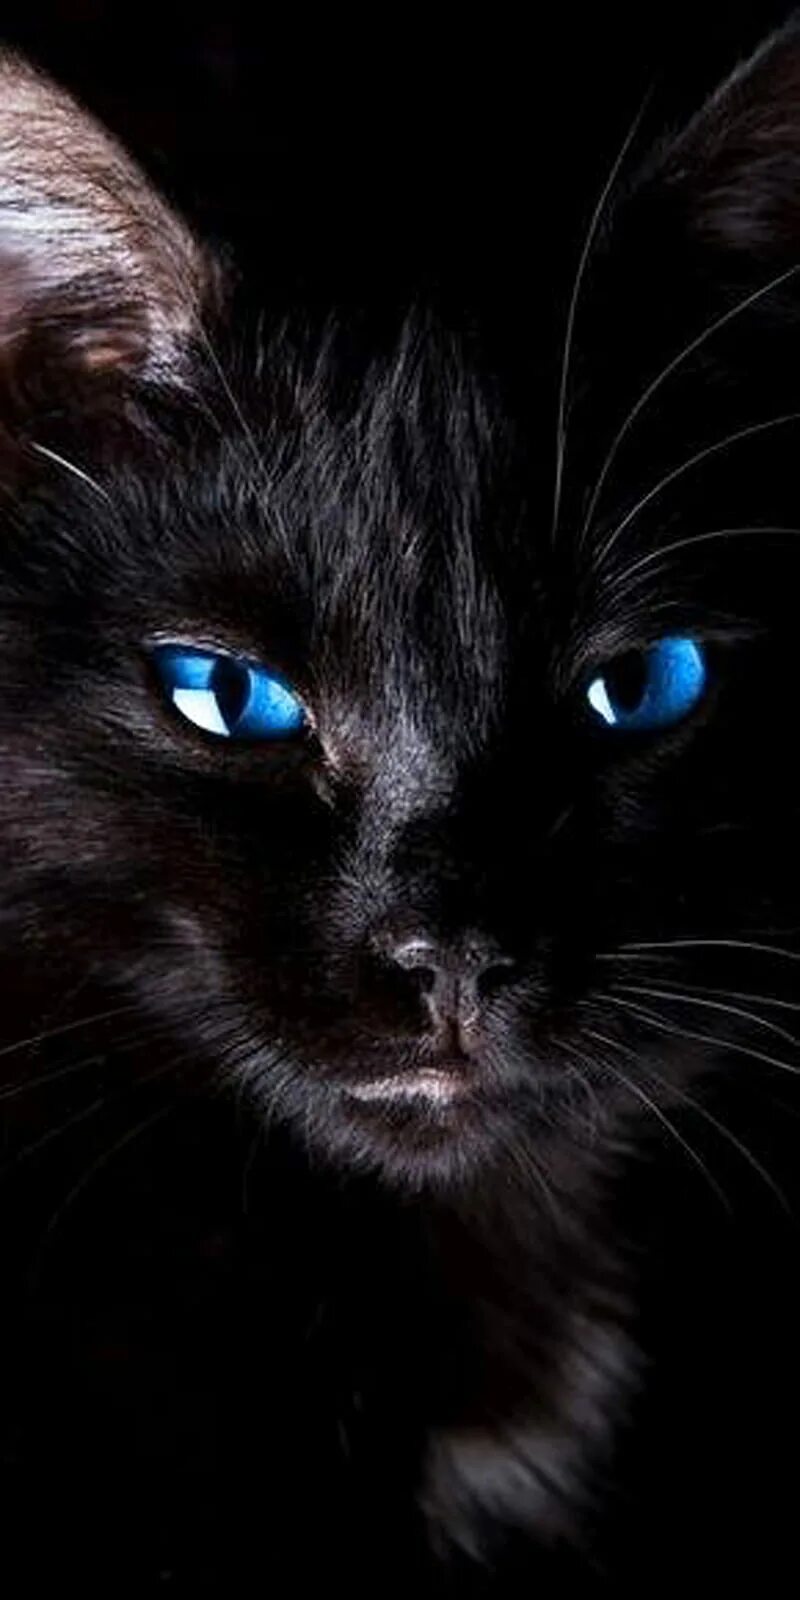 Чёрная кошка с голубыми глазами. Черный кот с голубыми глазами. Череый кои с нрлубыми нлахами. Чёрный кот с синими глазами. Черная глазая